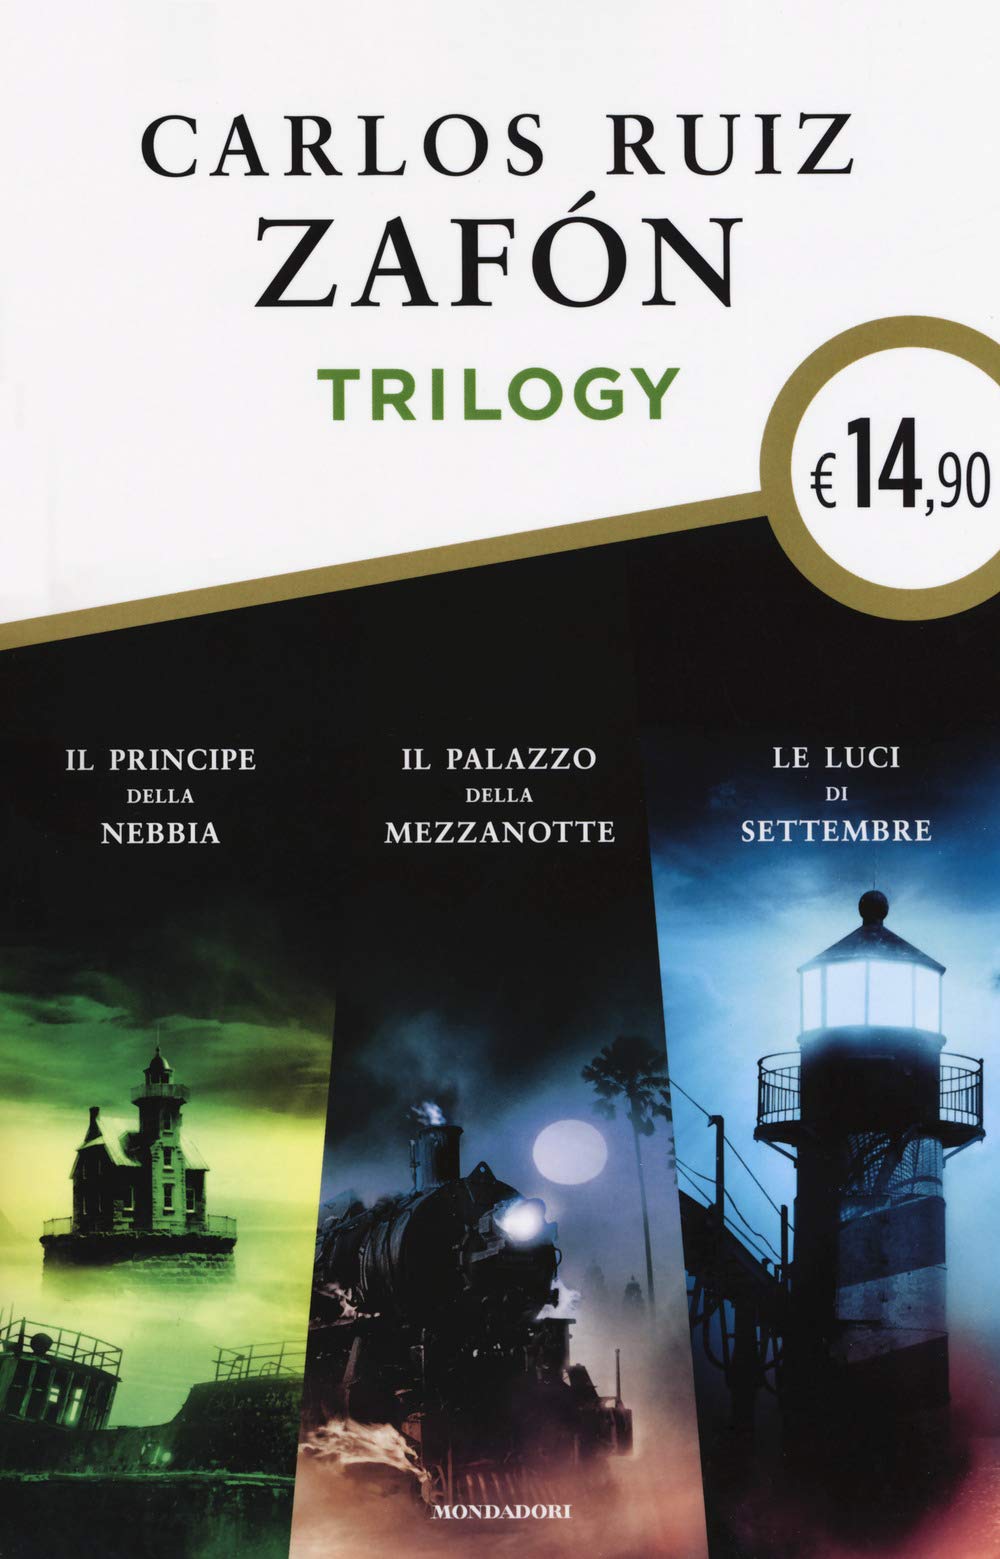 Trilogy: Il principe della nebbia - Il palazzo della mezzanotte - Le luci di settembre | Carlos Ruiz Zafon